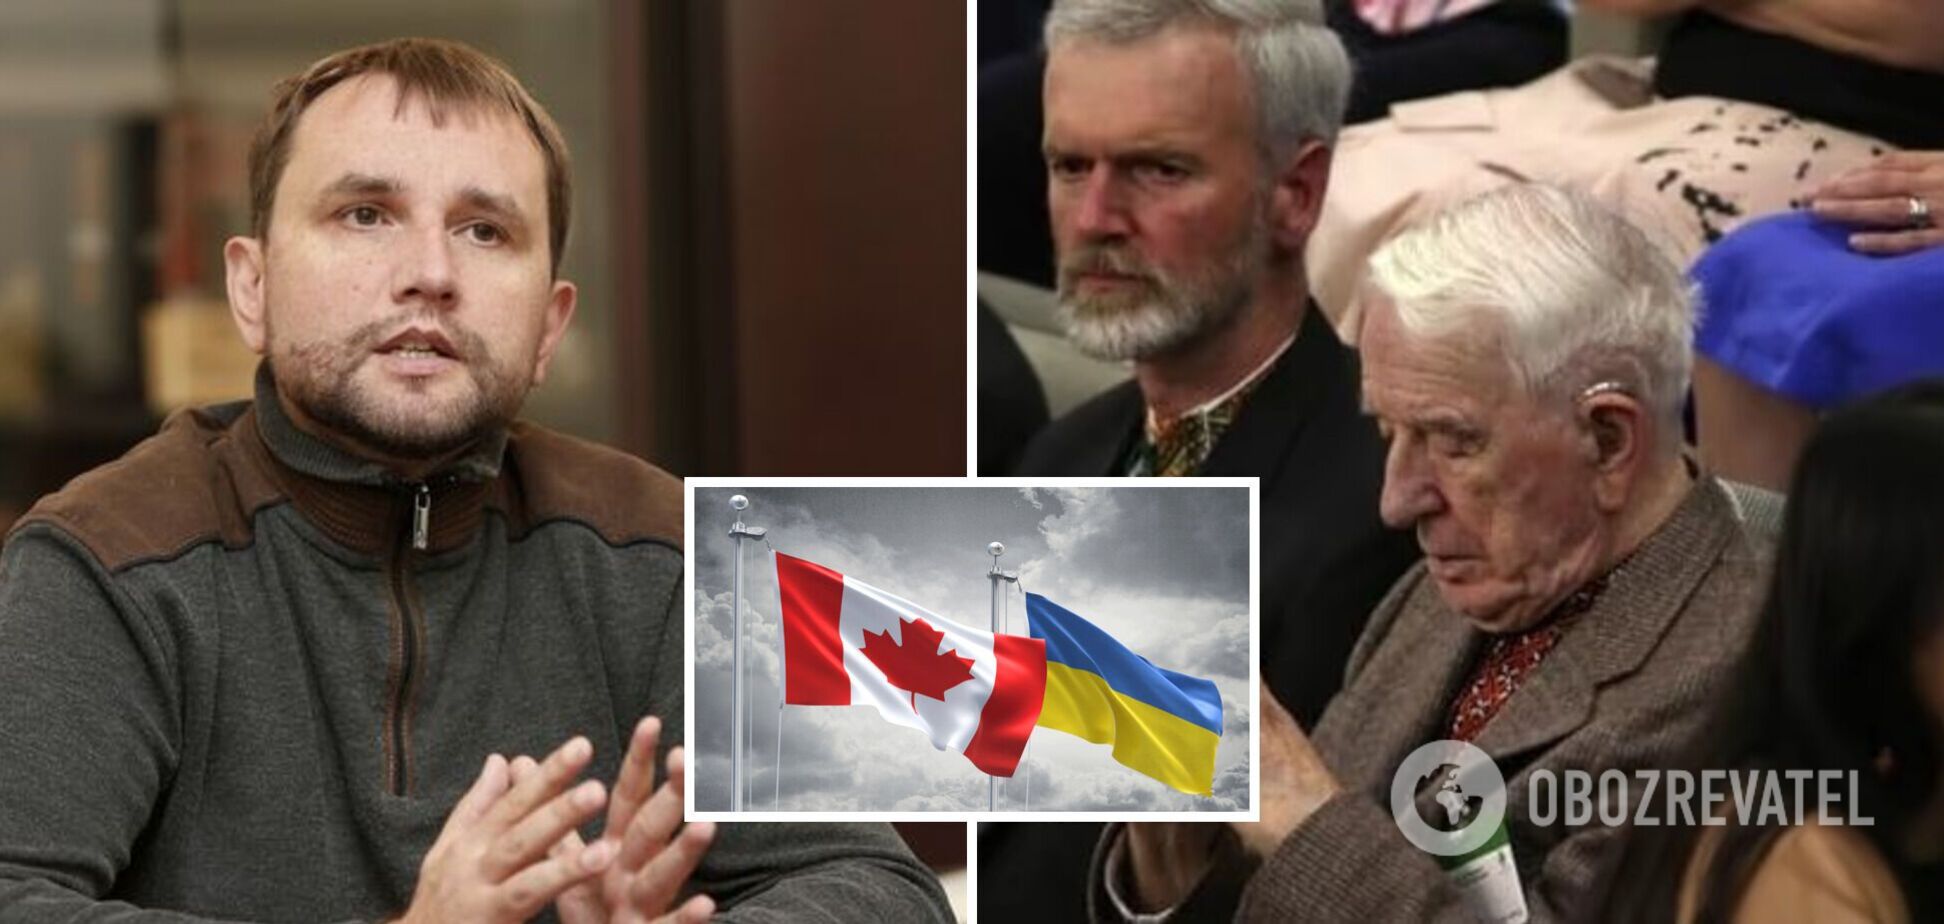 Почему возник скандал с Ярославом Гунькой в Канаде: Вятрович разъяснил ситуацию